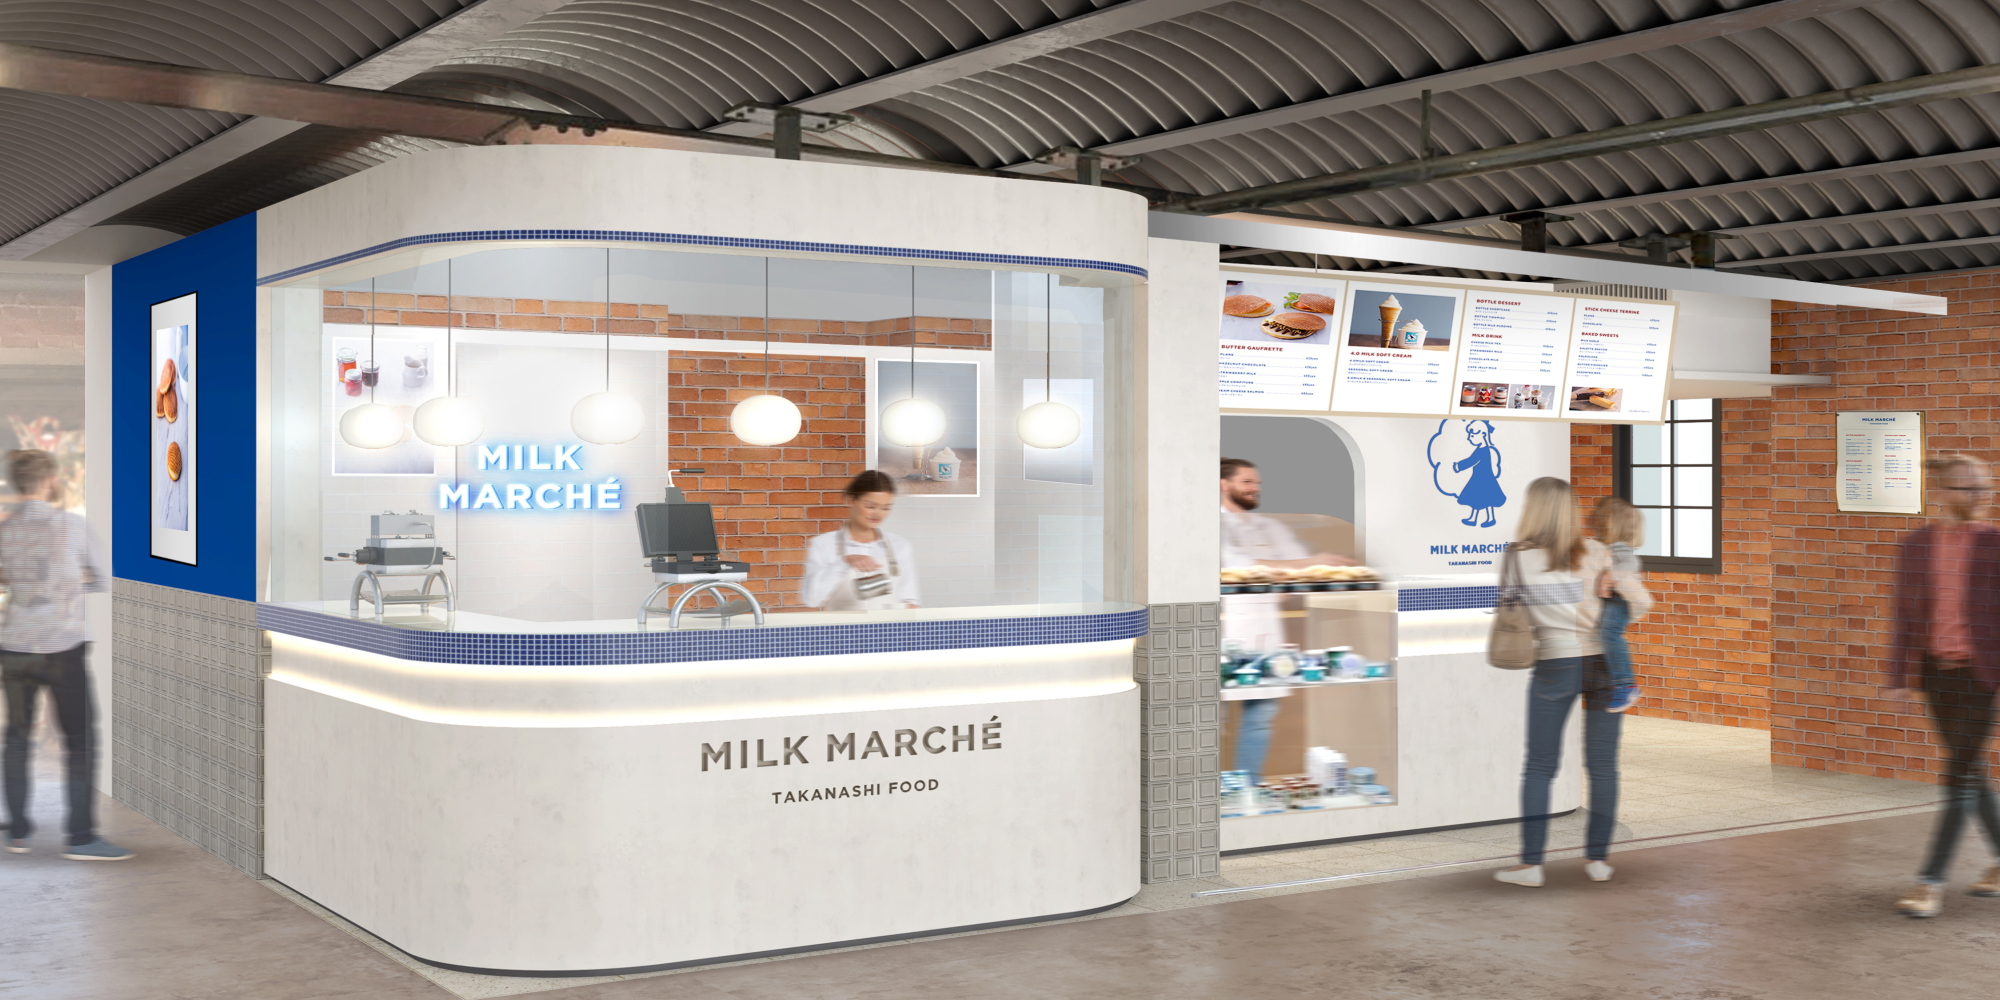 milk-marche_馬車道店舗